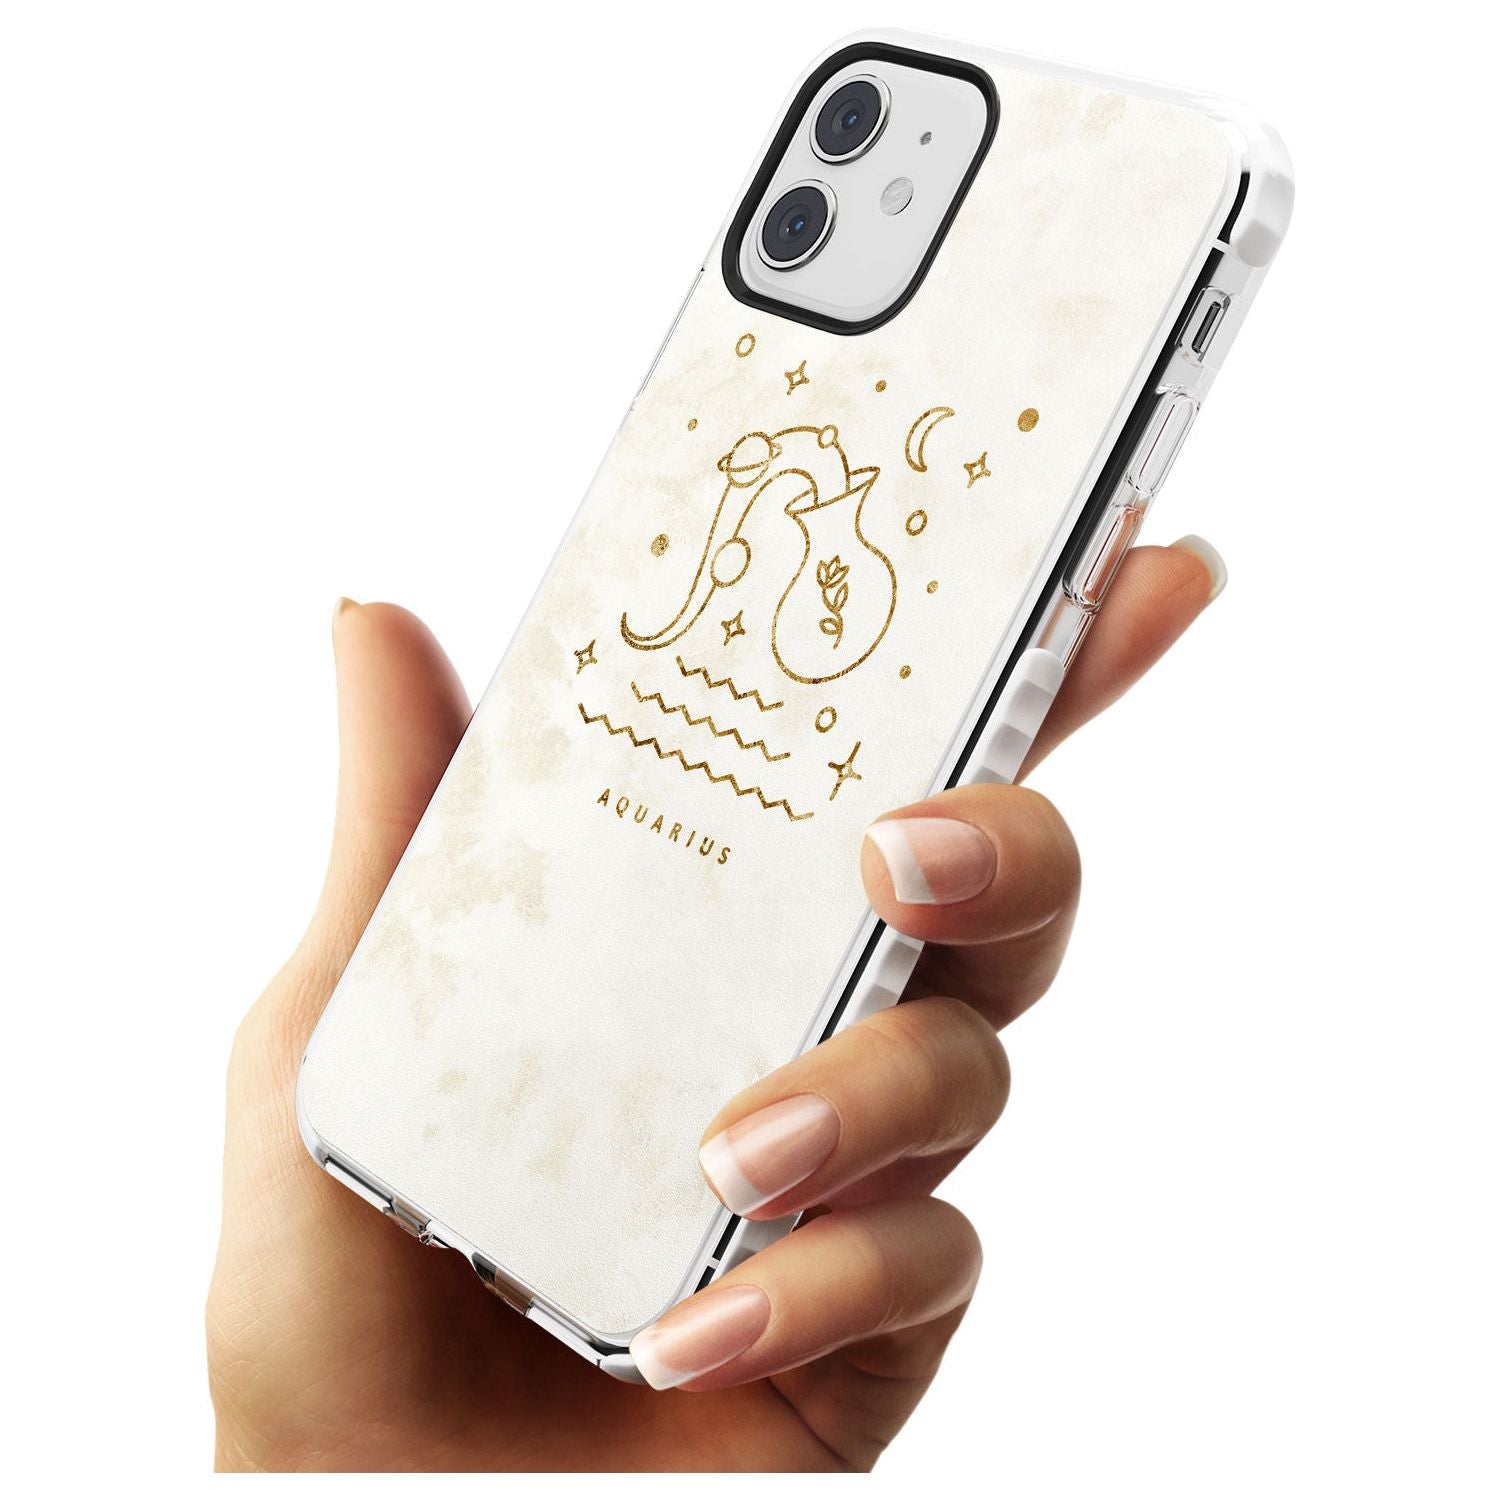 Aquarius Emblem - Solid Gold Marbled Design Impact Phone Case for iPhone 11